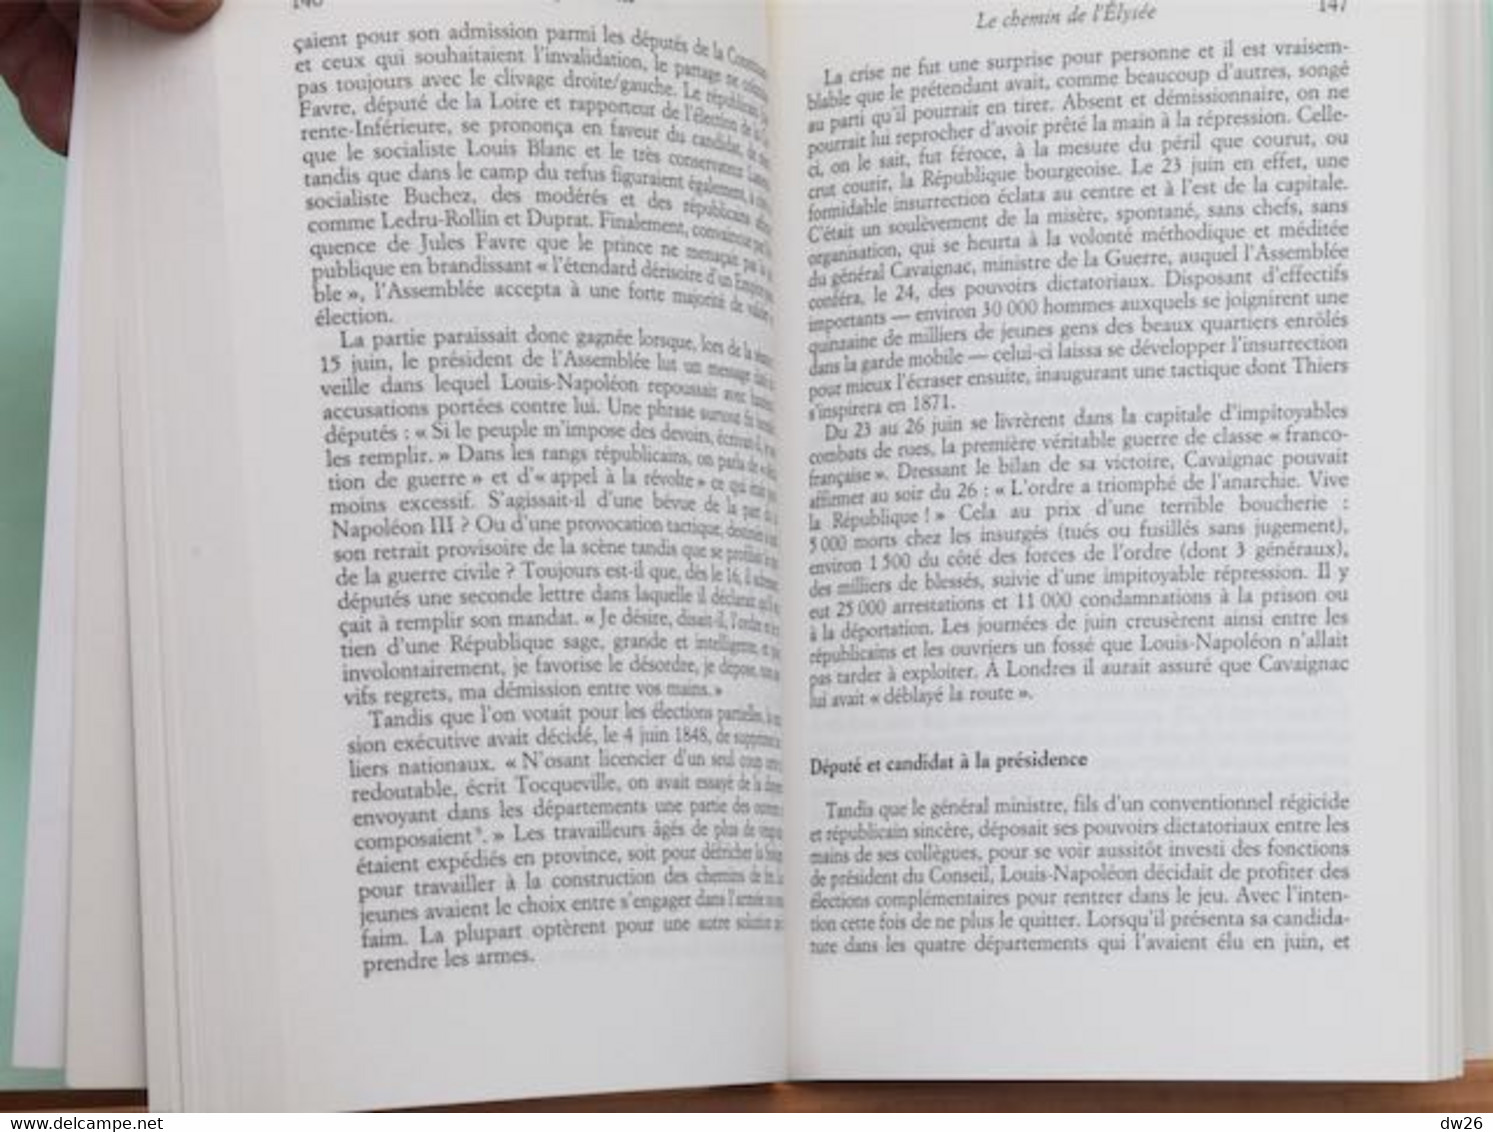 Histoire, XIXe Siècle - Napoléon III Par Pierre Milza - Edition Perrin 2004 - Geschiedenis